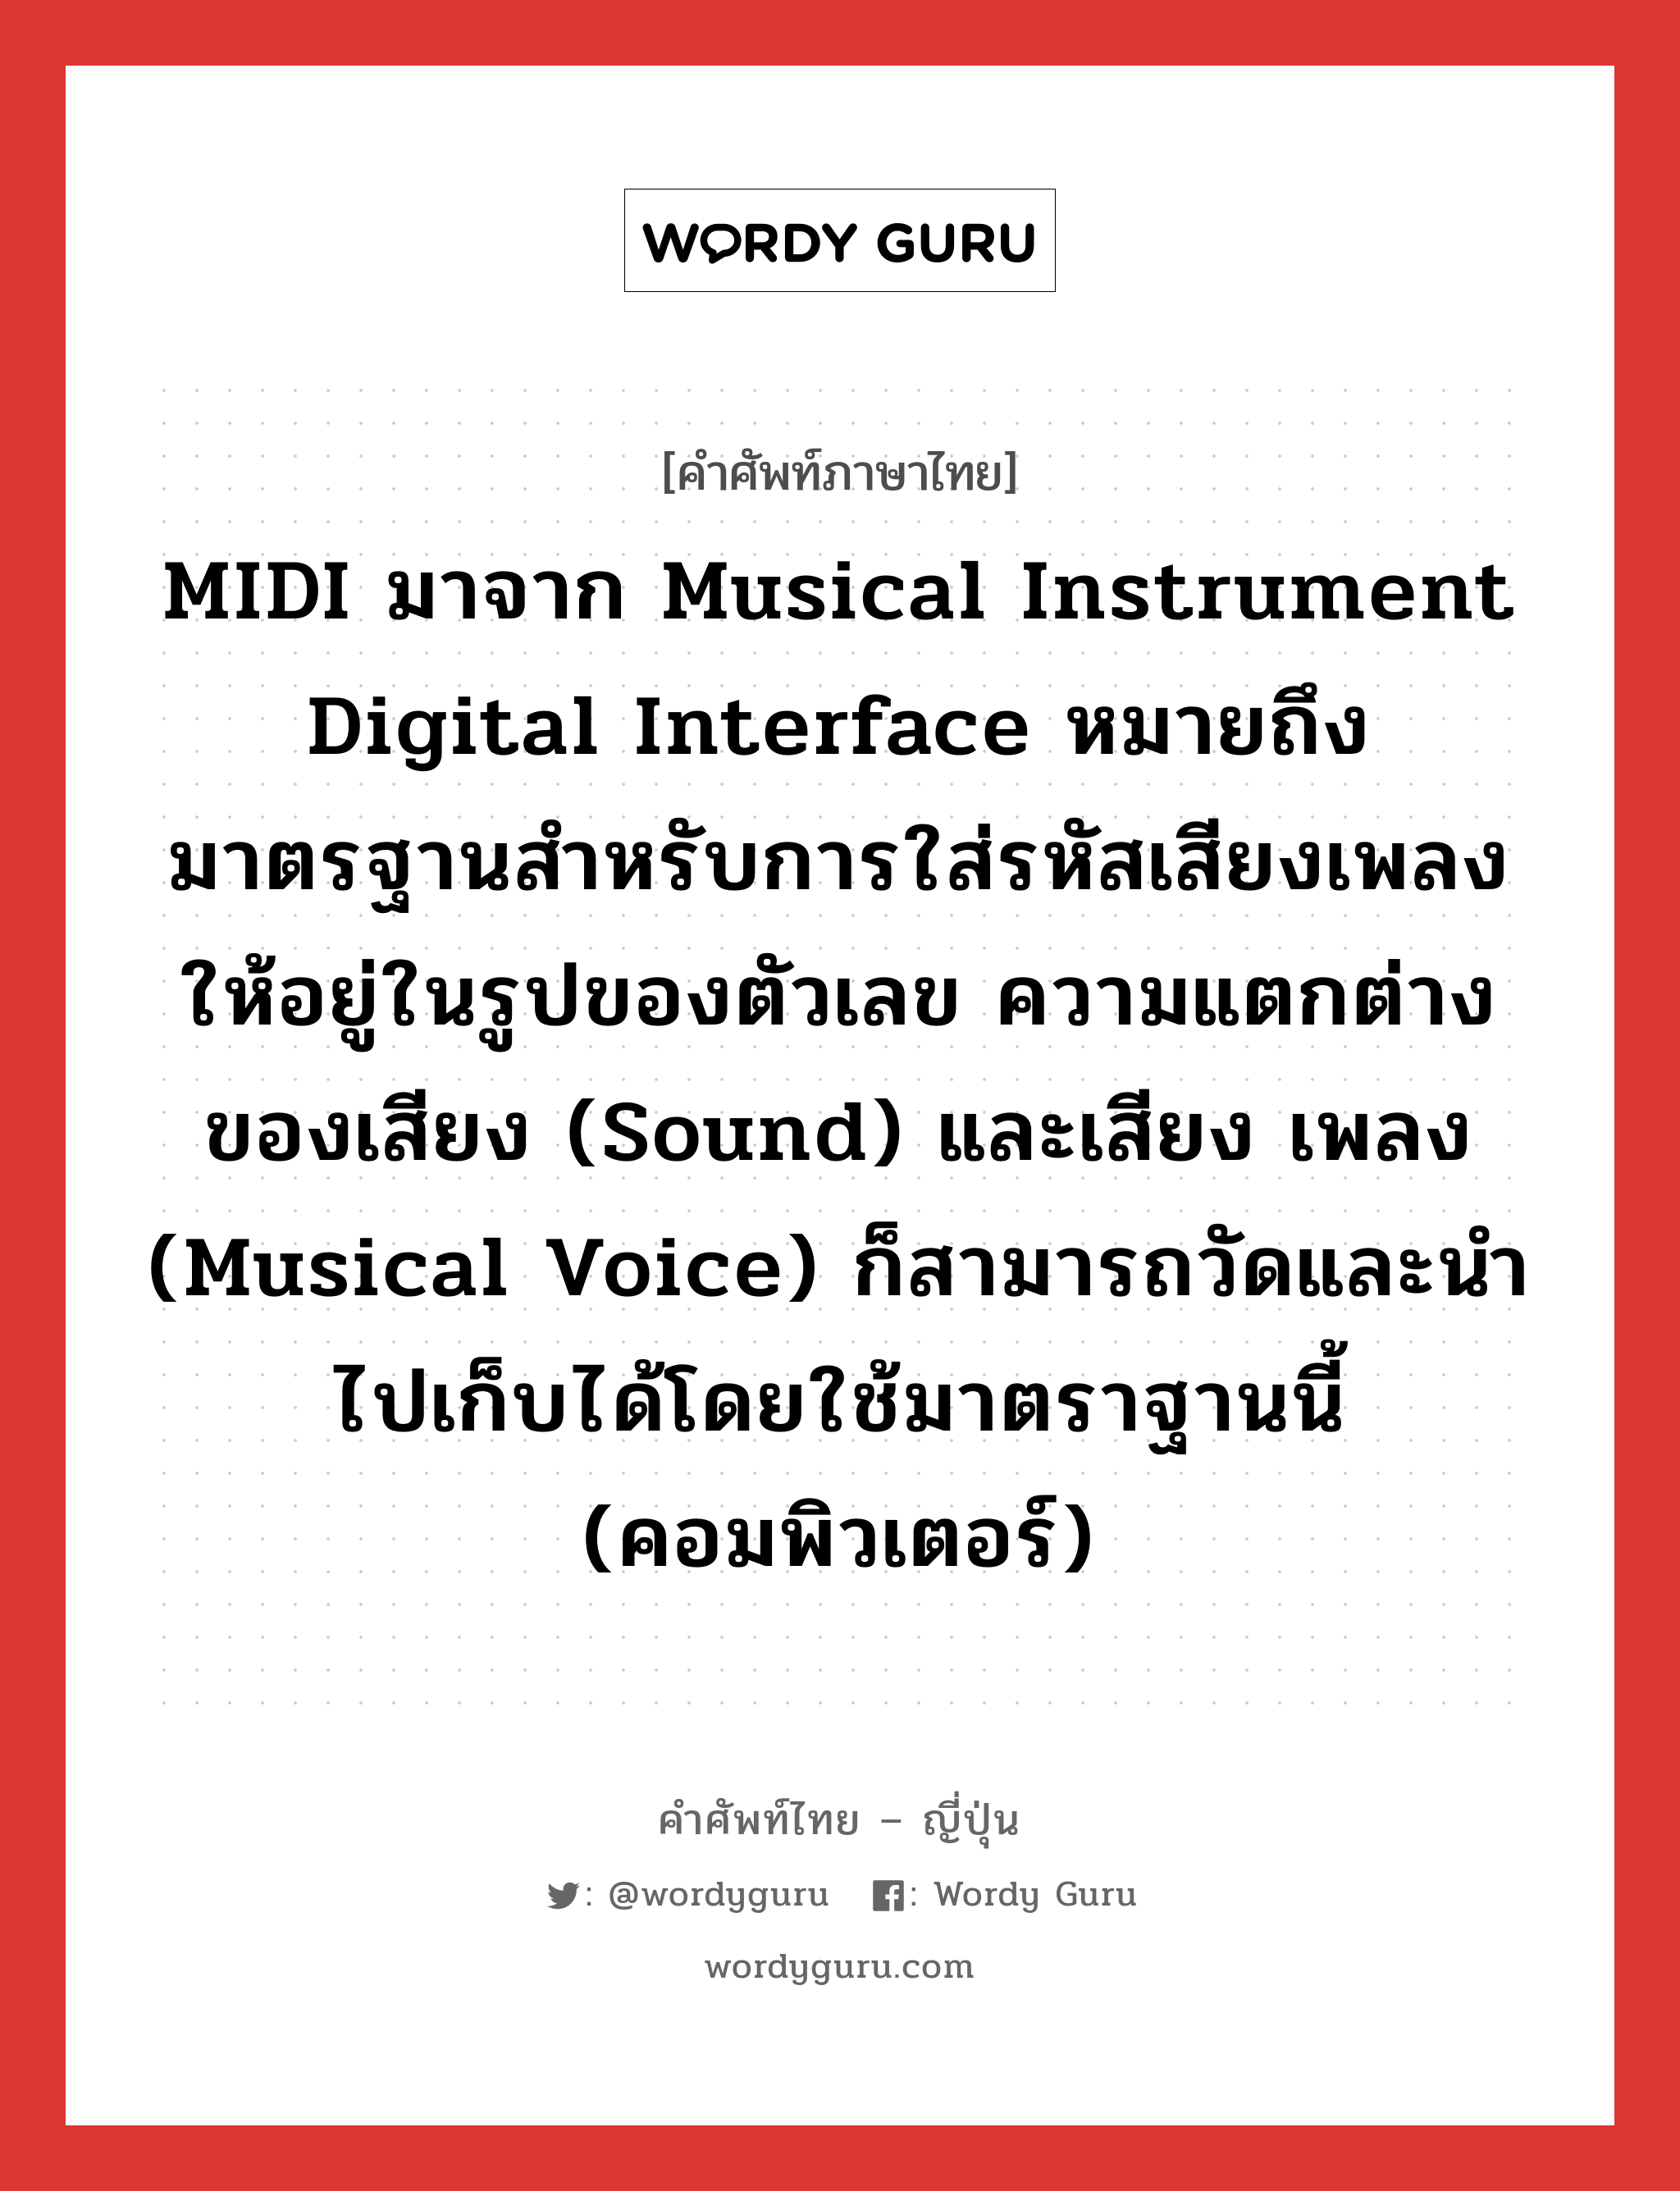 ミディ ภาษาไทย?, คำศัพท์ภาษาไทย - ญี่ปุ่น ミディ ภาษาญี่ปุ่น MIDI มาจาก Musical Instrument Digital Interface หมายถึง มาตรฐานสำหรับการใส่รหัสเสียงเพลงให้อยู่ในรูปของตัวเลข ความแตกต่างของเสียง (sound) และเสียง เพลง (musical voice) ก็สามารถวัดและนำไปเก็บได้โดยใช้มาตราฐานนี้ (คอมพิวเตอร์) คำอ่านภาษาญี่ปุ่น ミディ หมวด n หมวด n